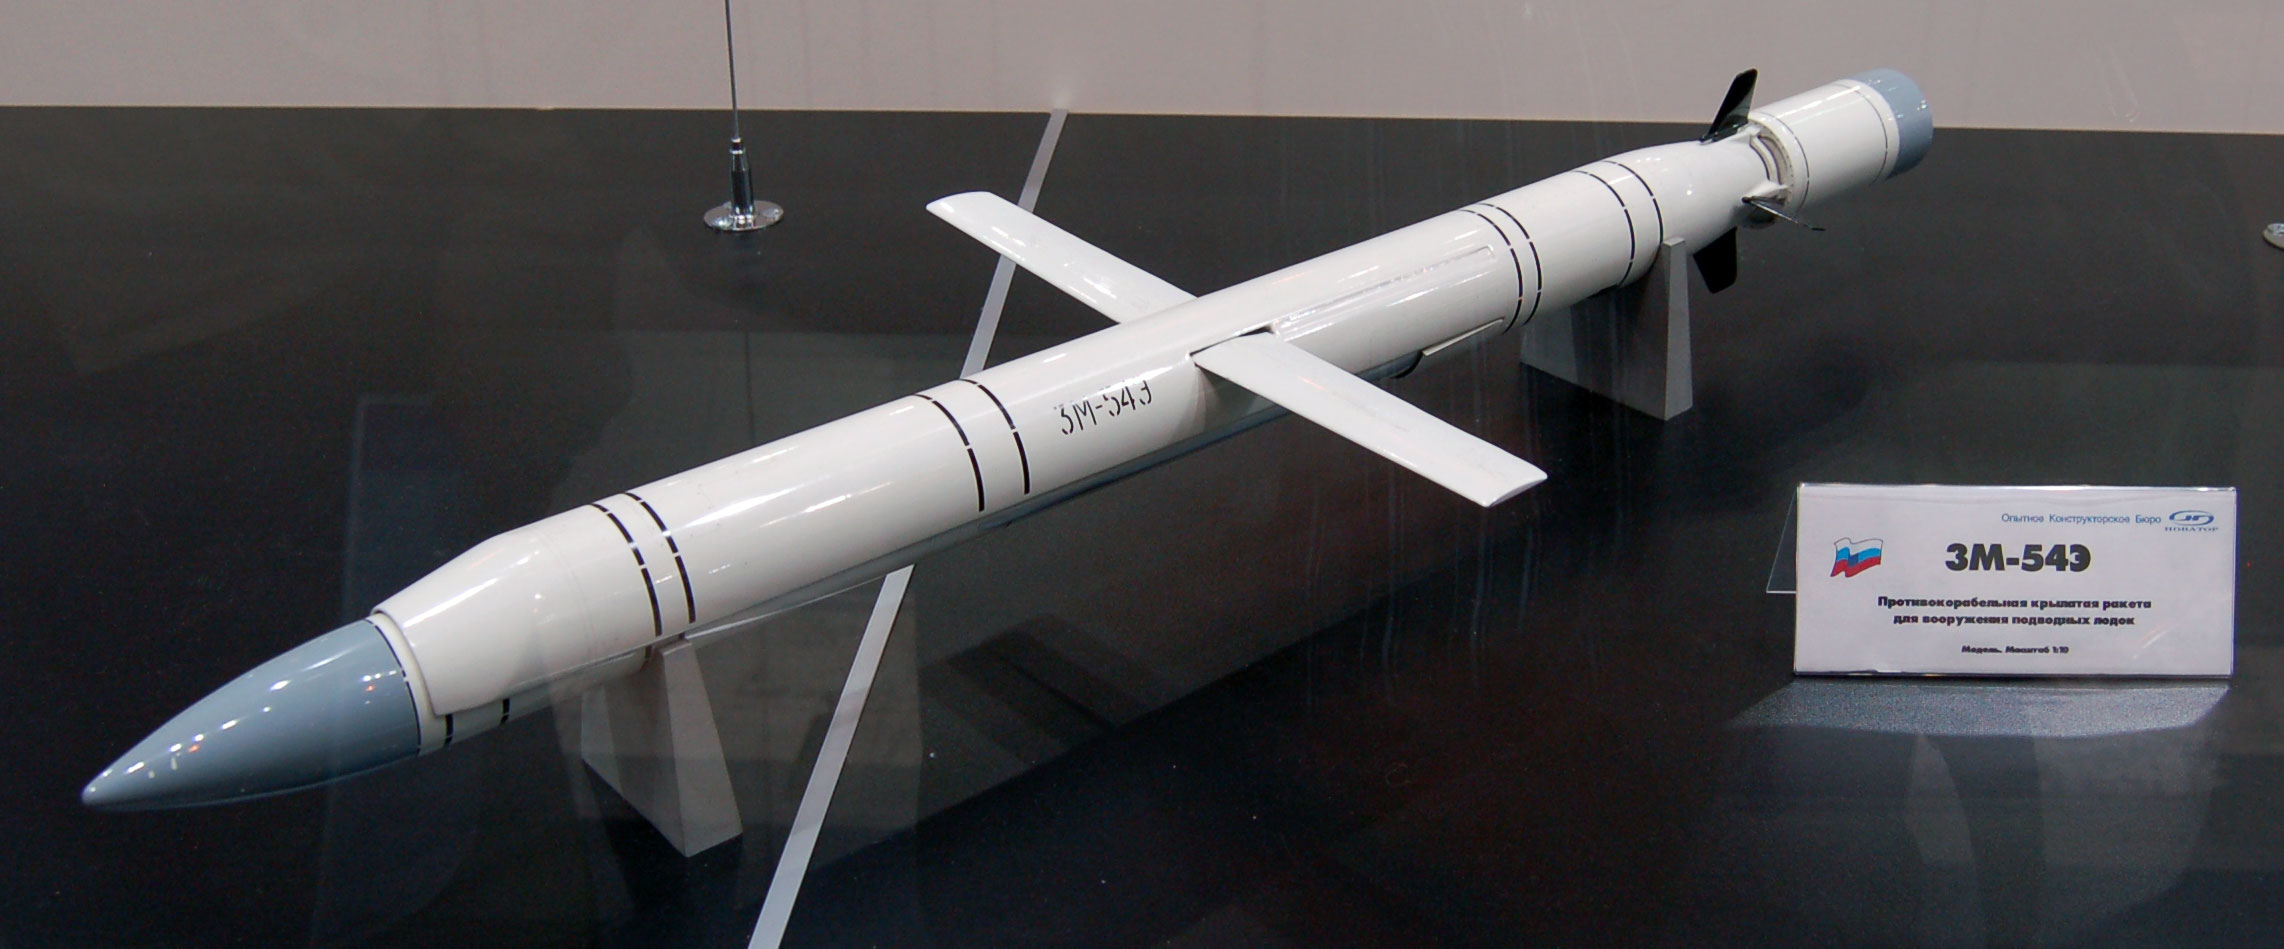 3M-54E_missile_MAKS2009.jpg